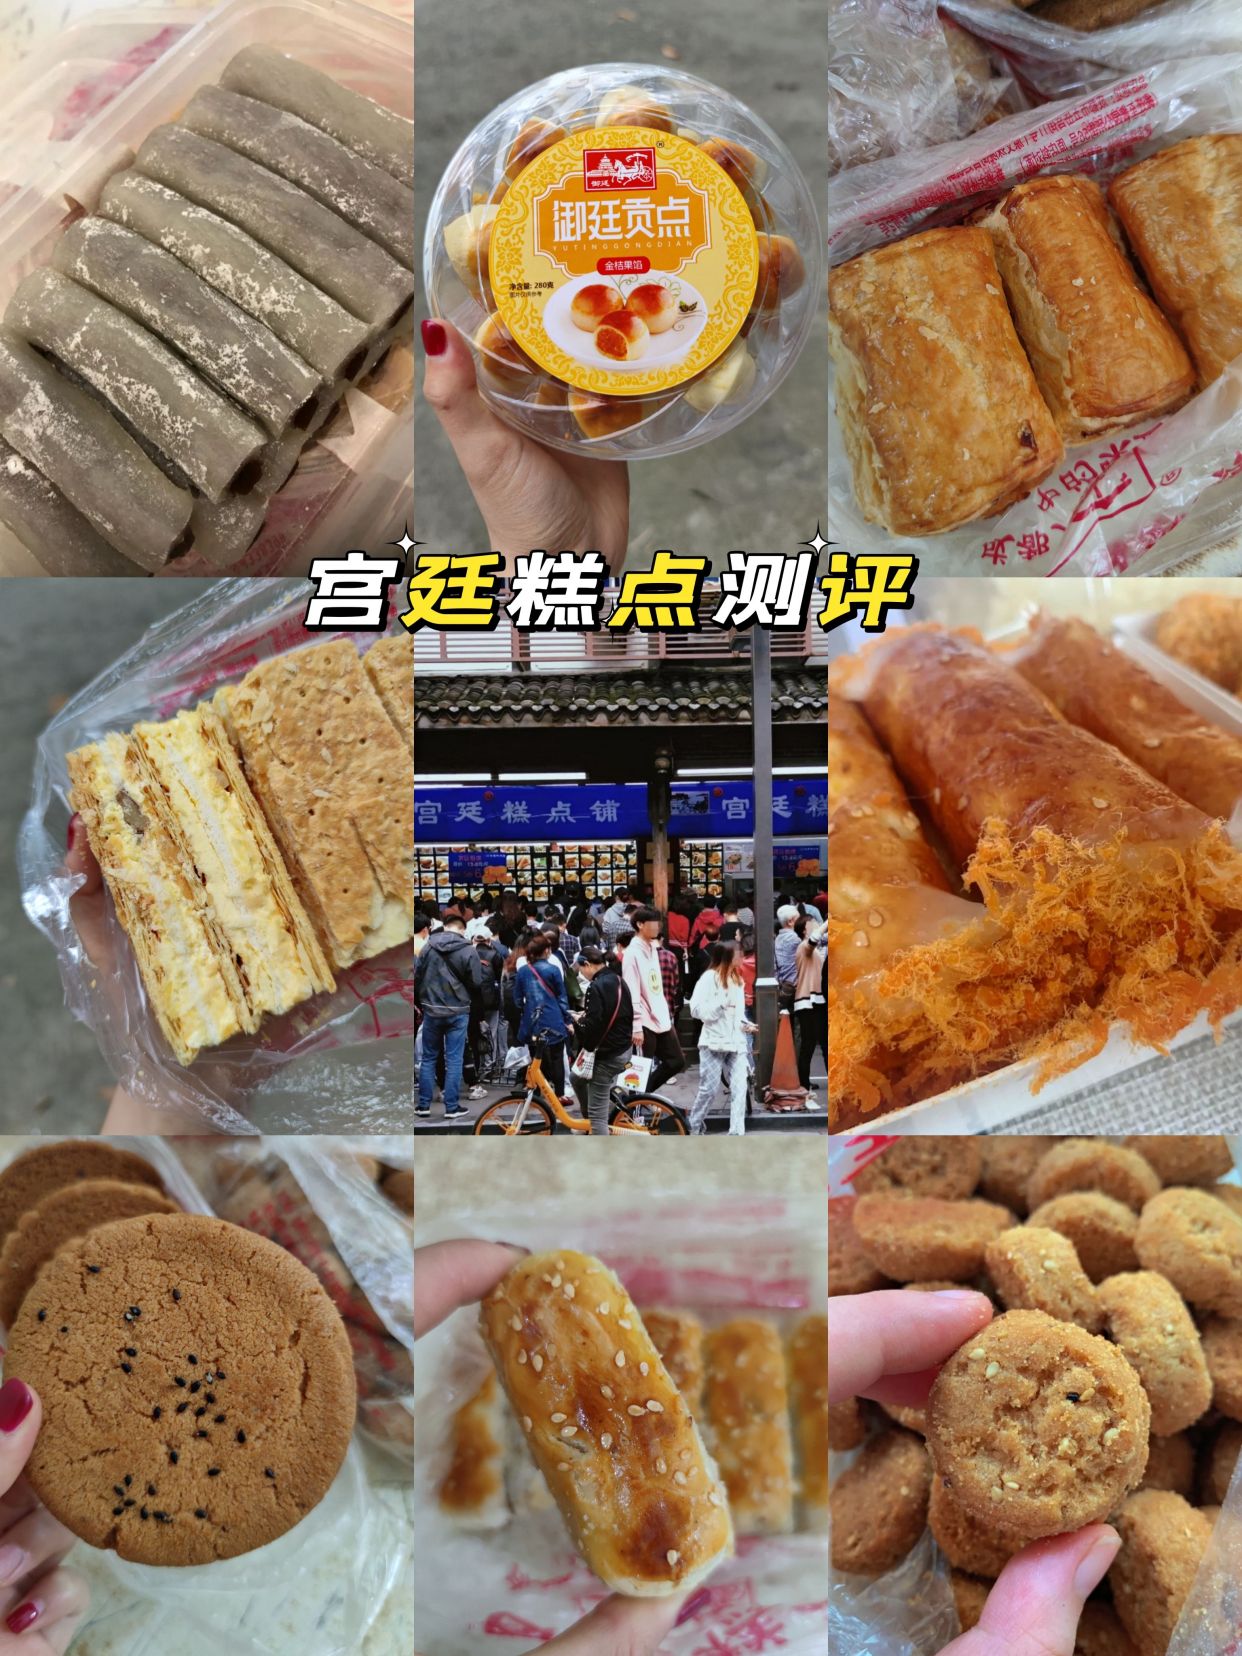 中式宫廷点心培训 手工糕点速成班 北京唐人美食学校 北京北京-食品商务网